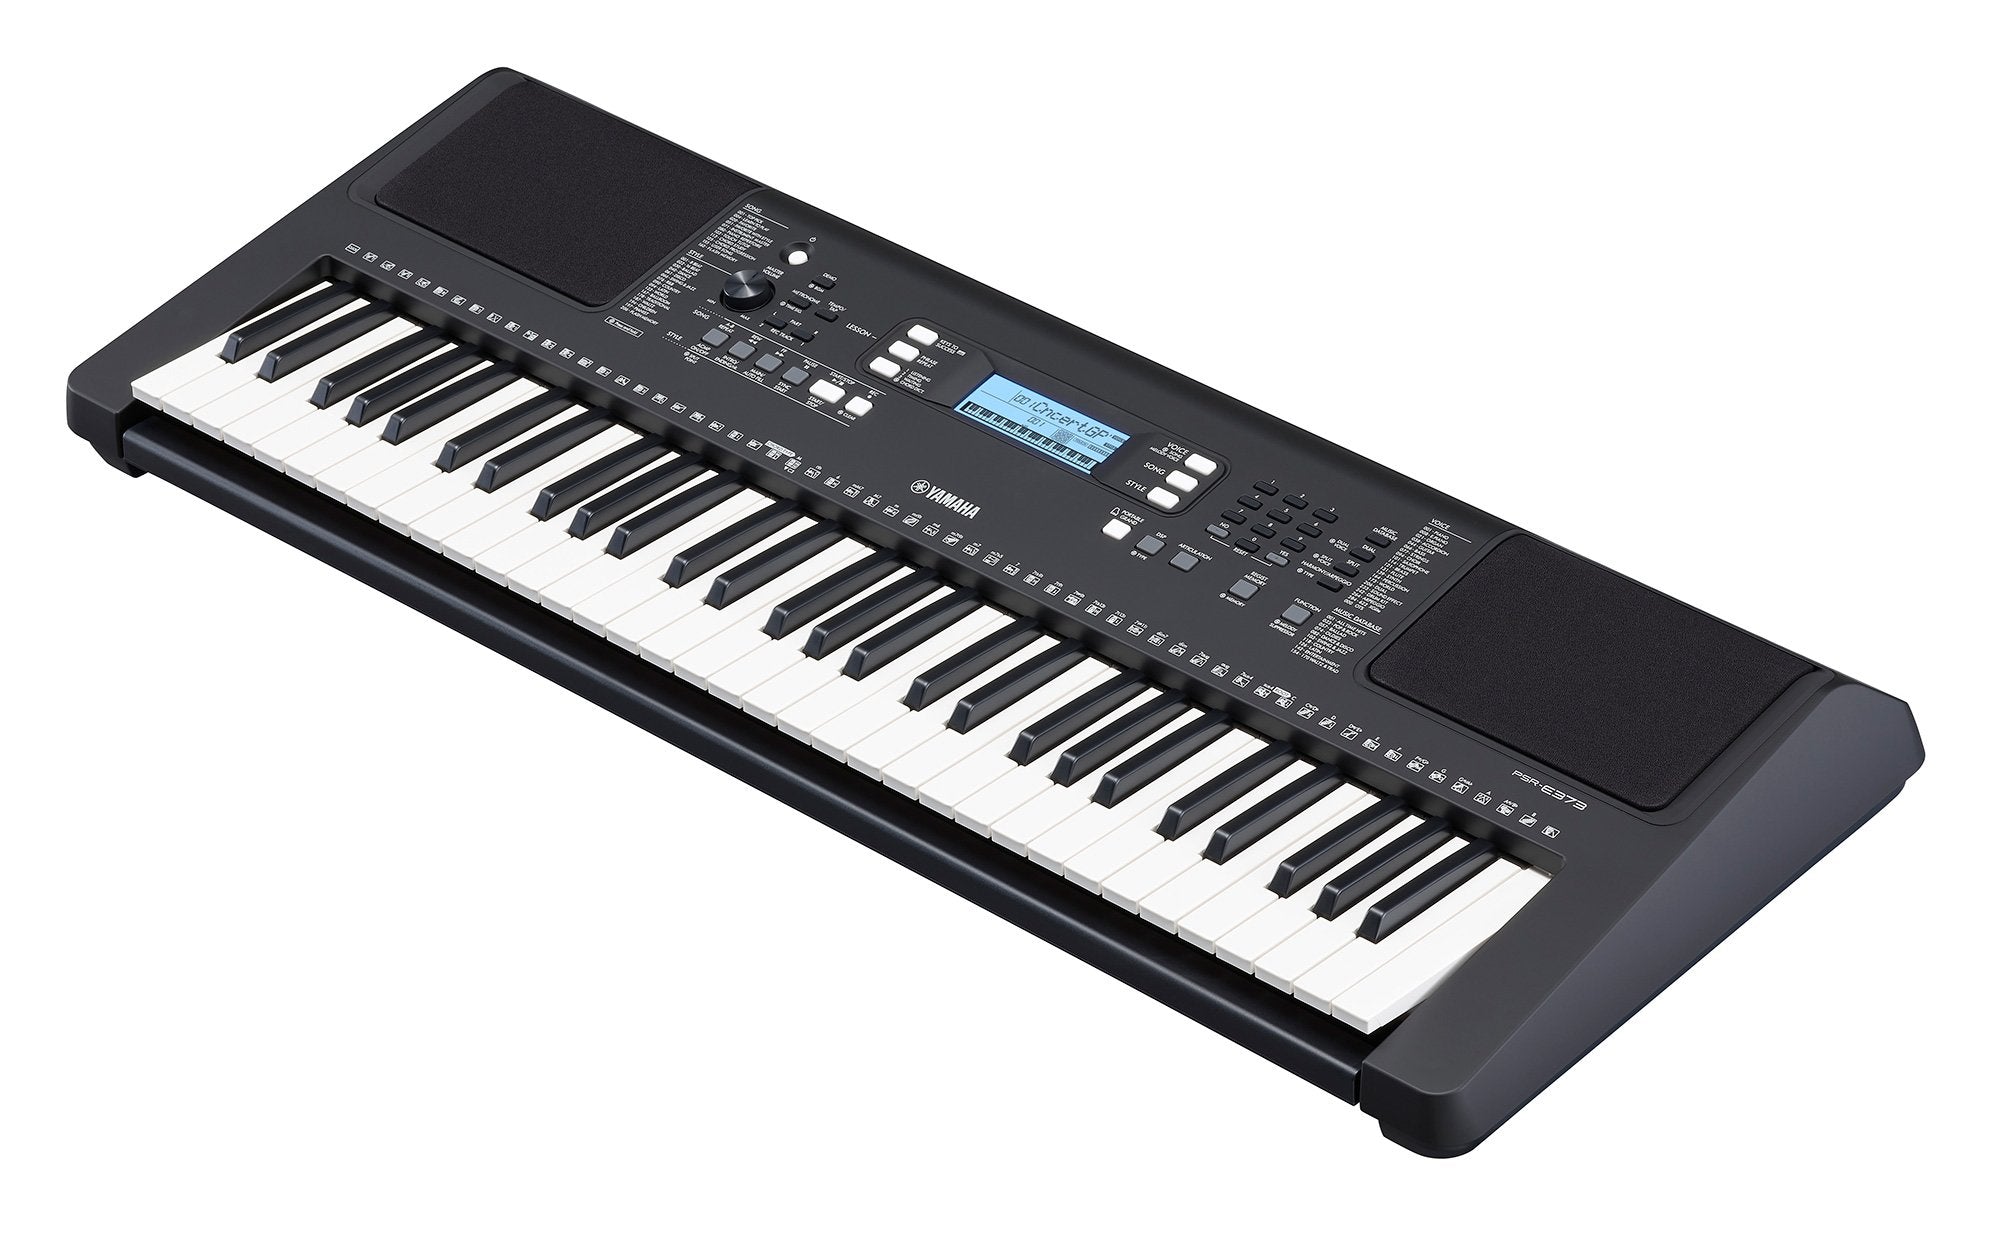 Yamaha PSR-E373 Portable Keyboard (with AC Adaptor)